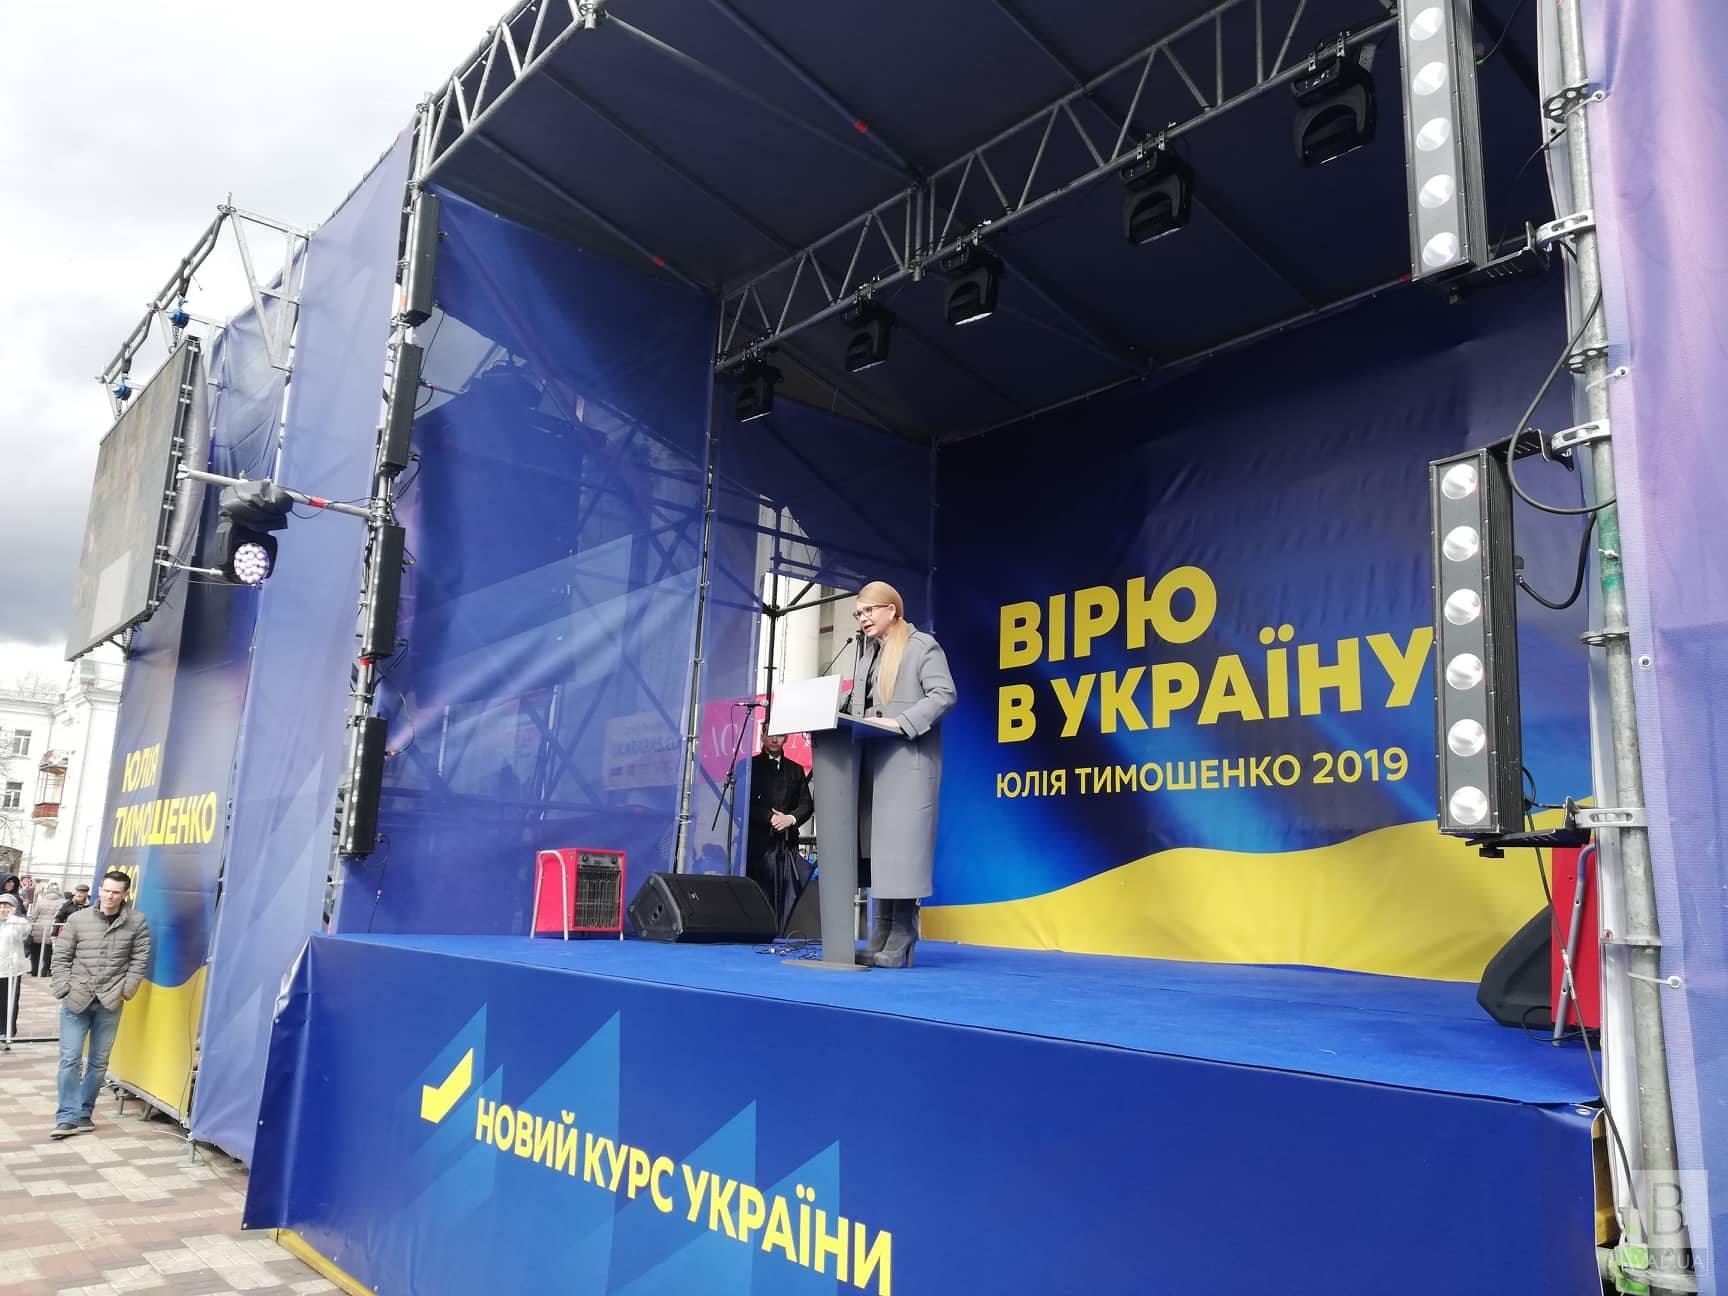 «Мы, как одна семья, должны быть едиными», - Юлия Тимошенко в Чернигове. ФОТО